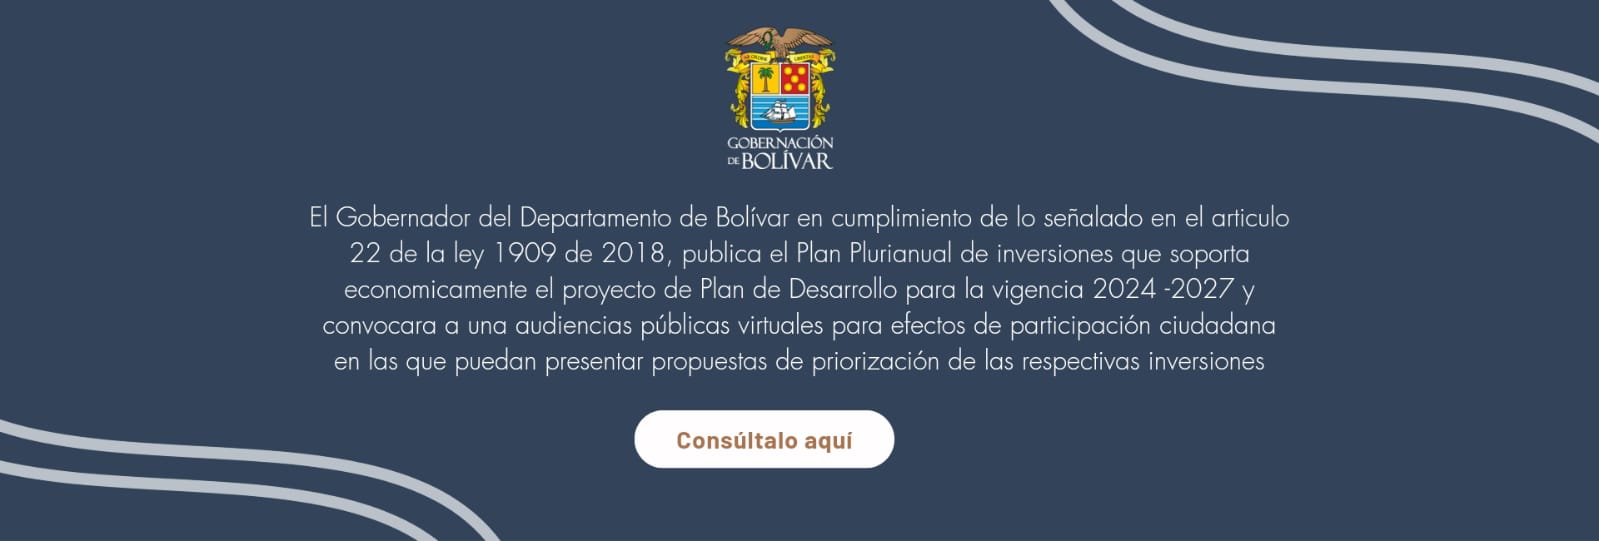 Plan Plurianual del Plan de Desarrollo de Bolívar 2024